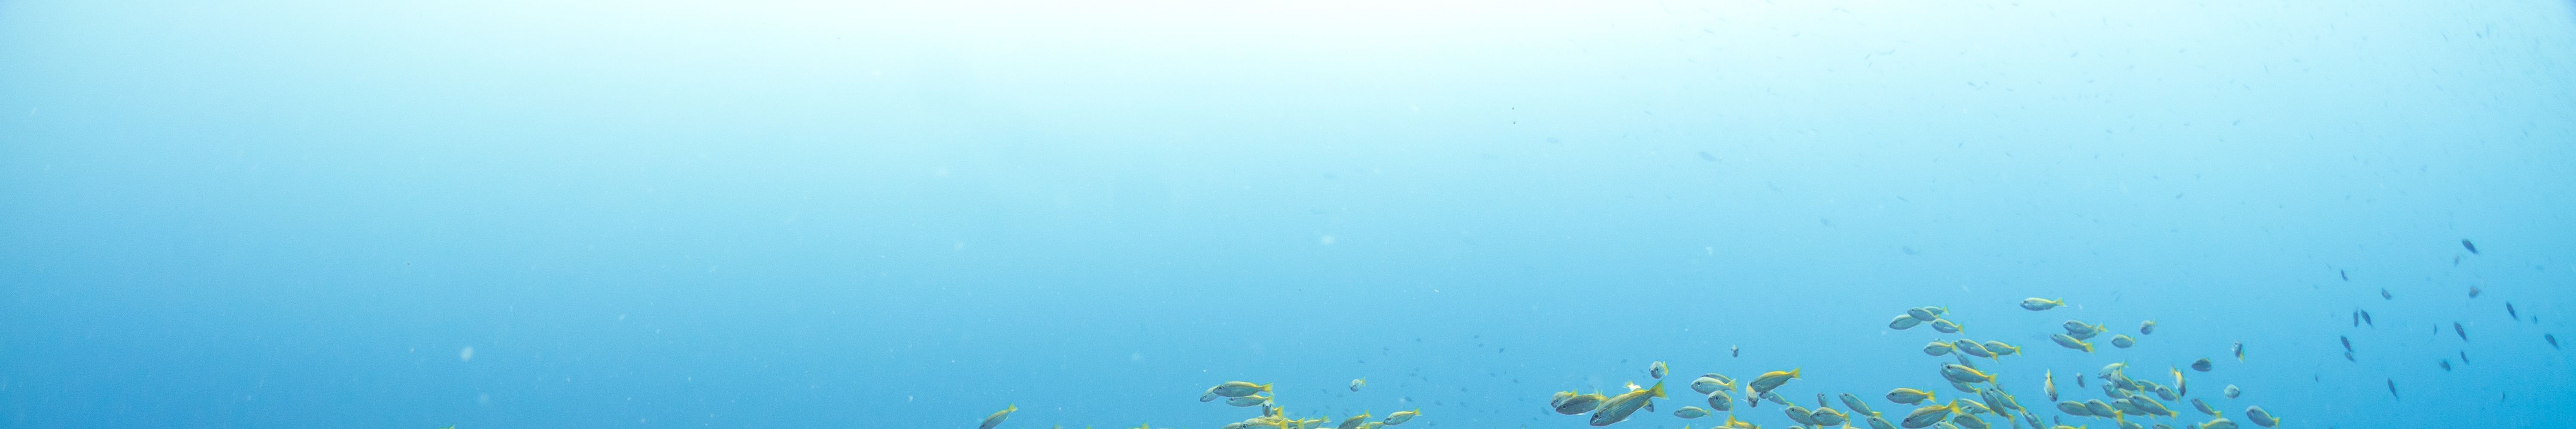 馬布島 PADI 五星潛水中心開放水域潛水員線上課程